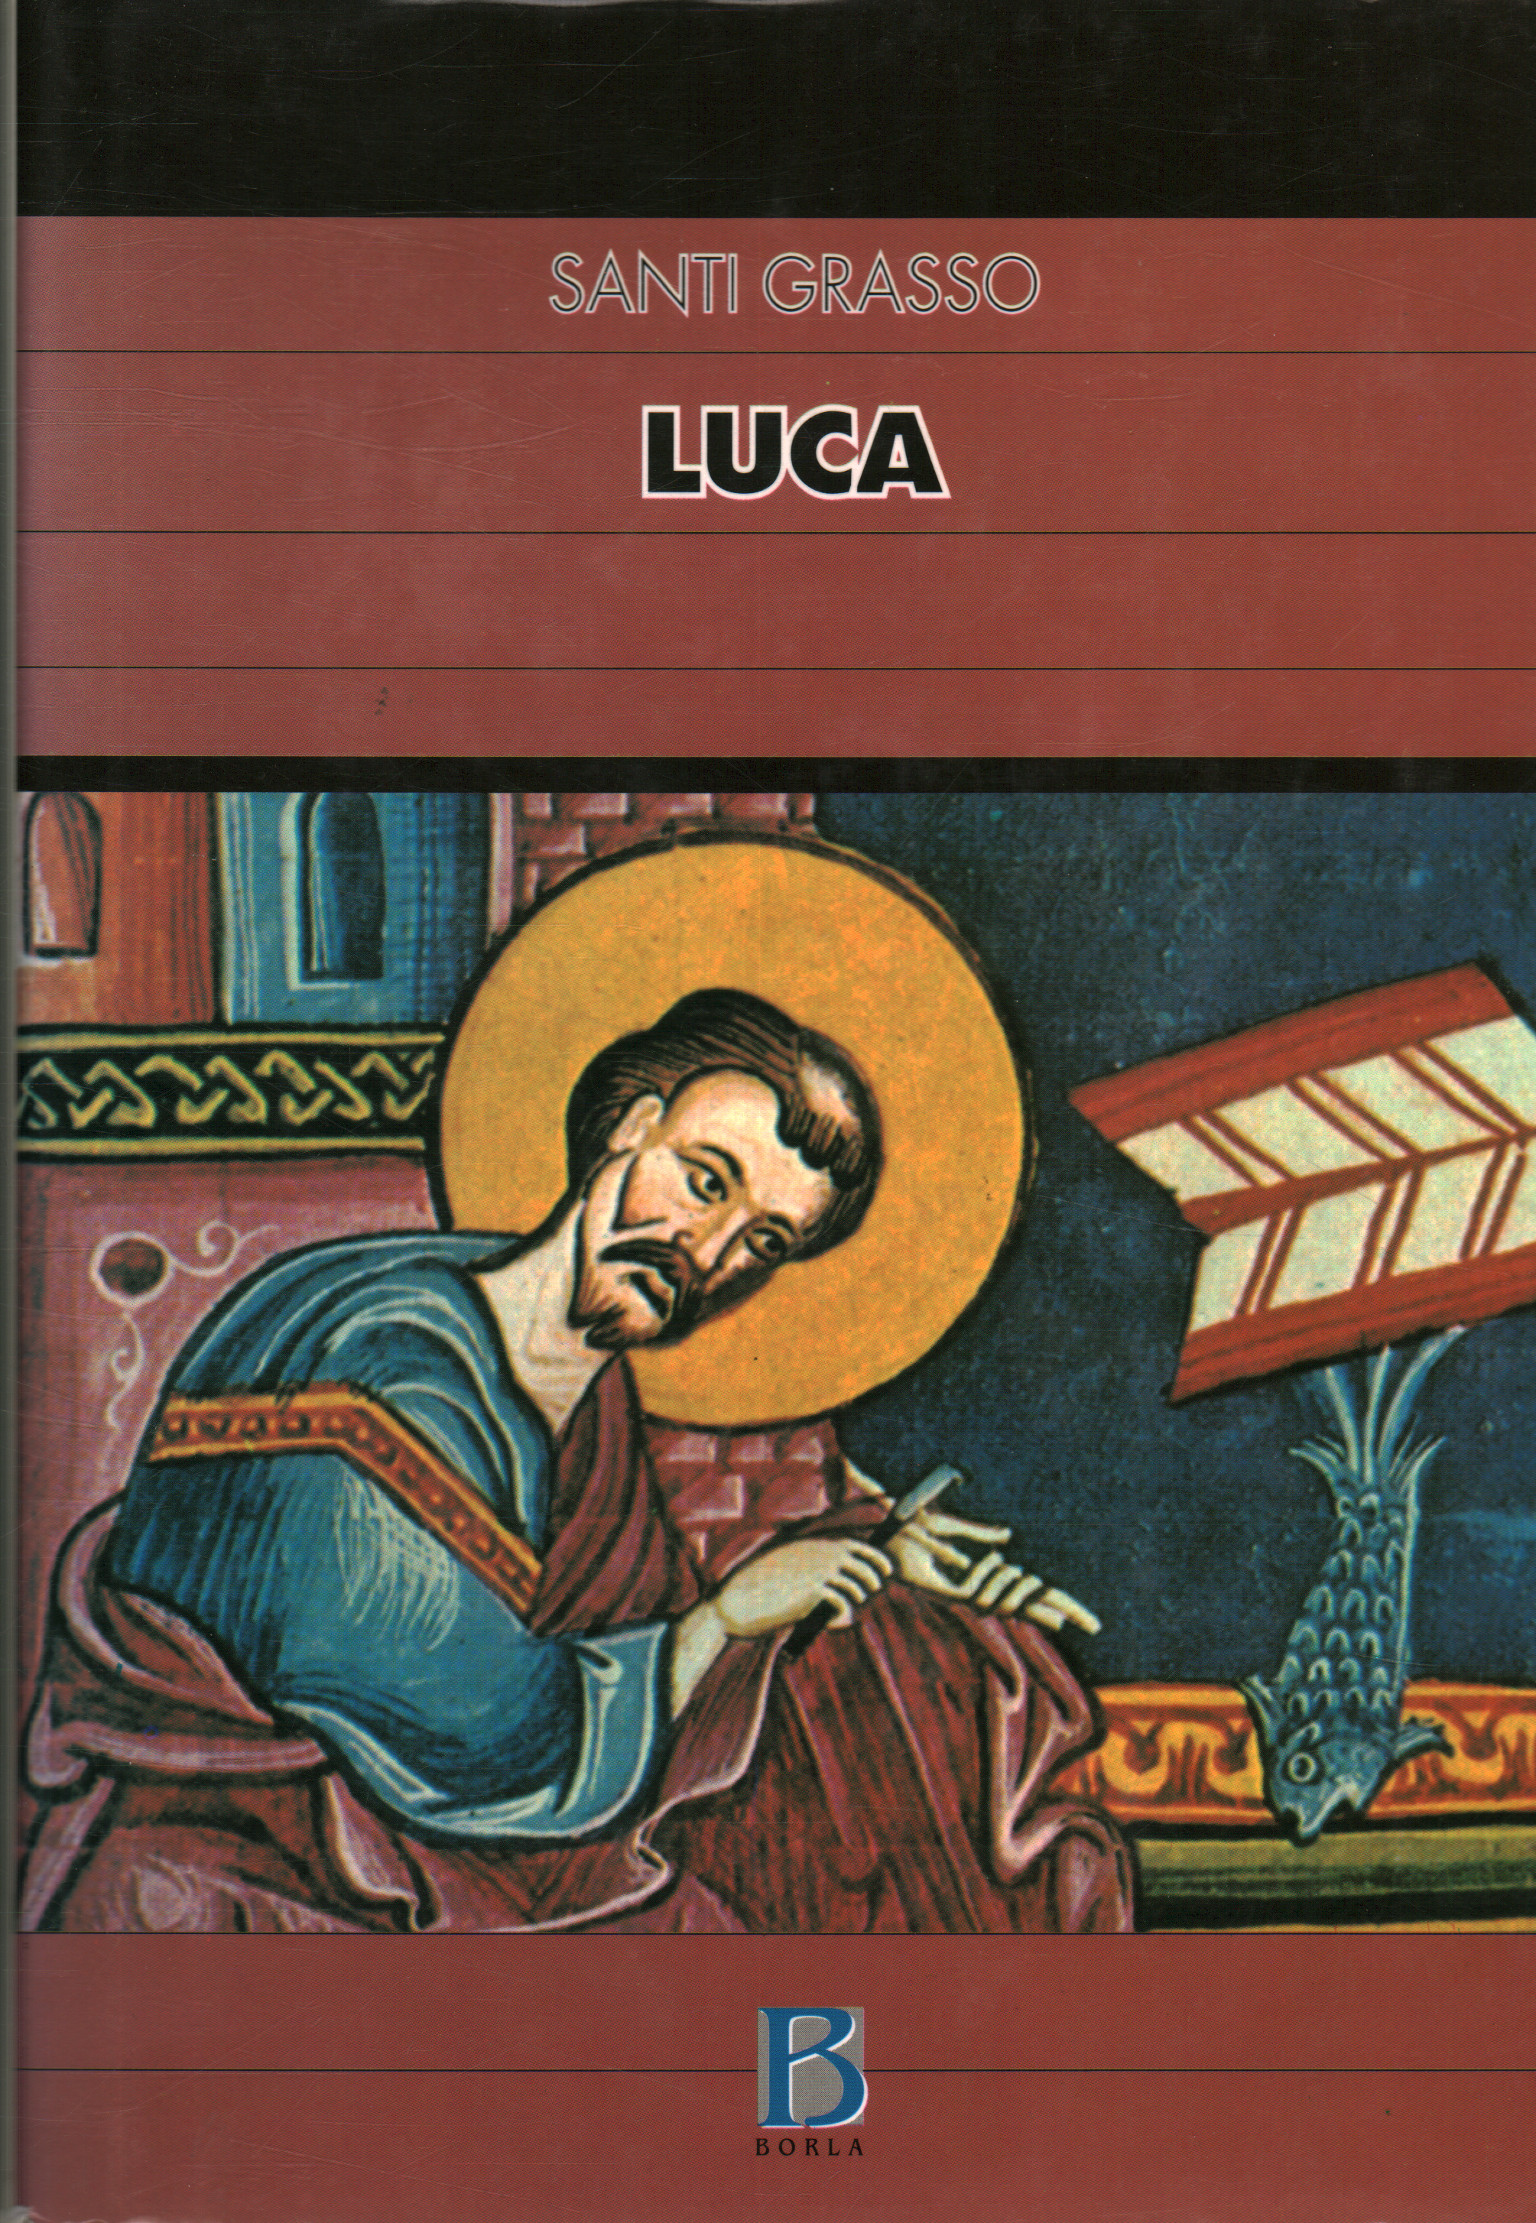 Luca, Santi Grasso